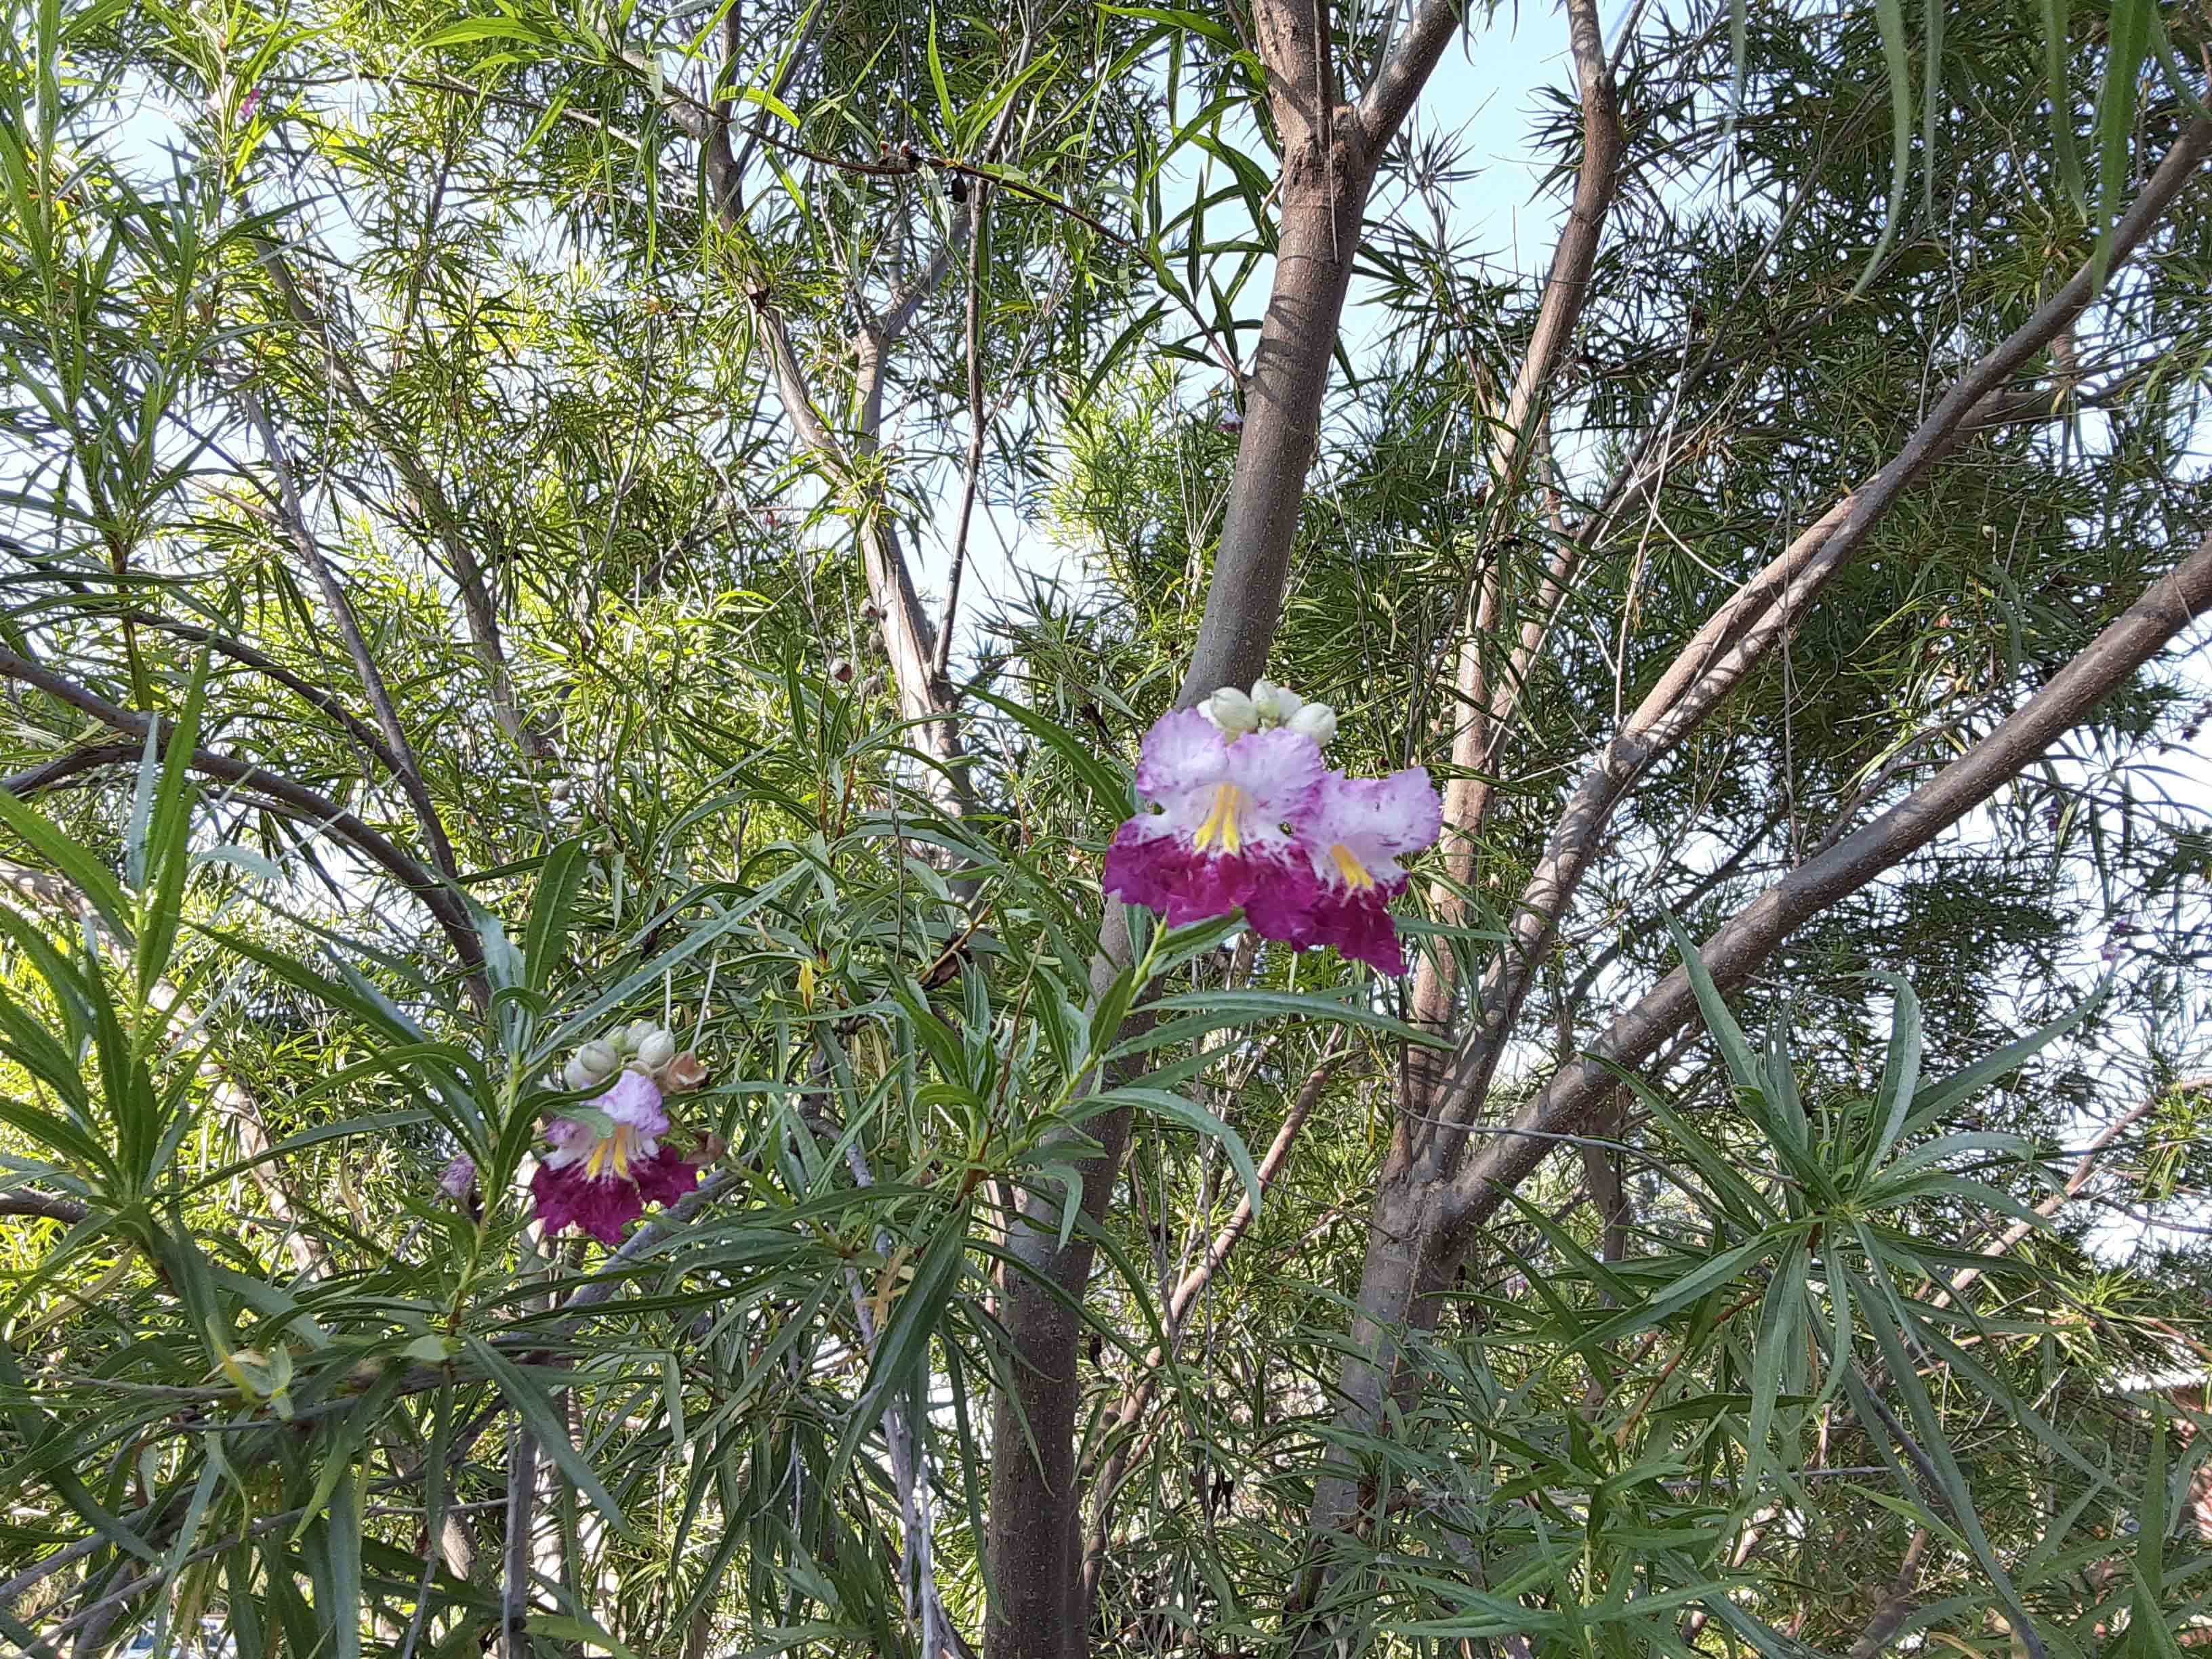 Desert Willow Tree Seeds Freshly Harvested  2019 100 Purple Orchid like Flower 